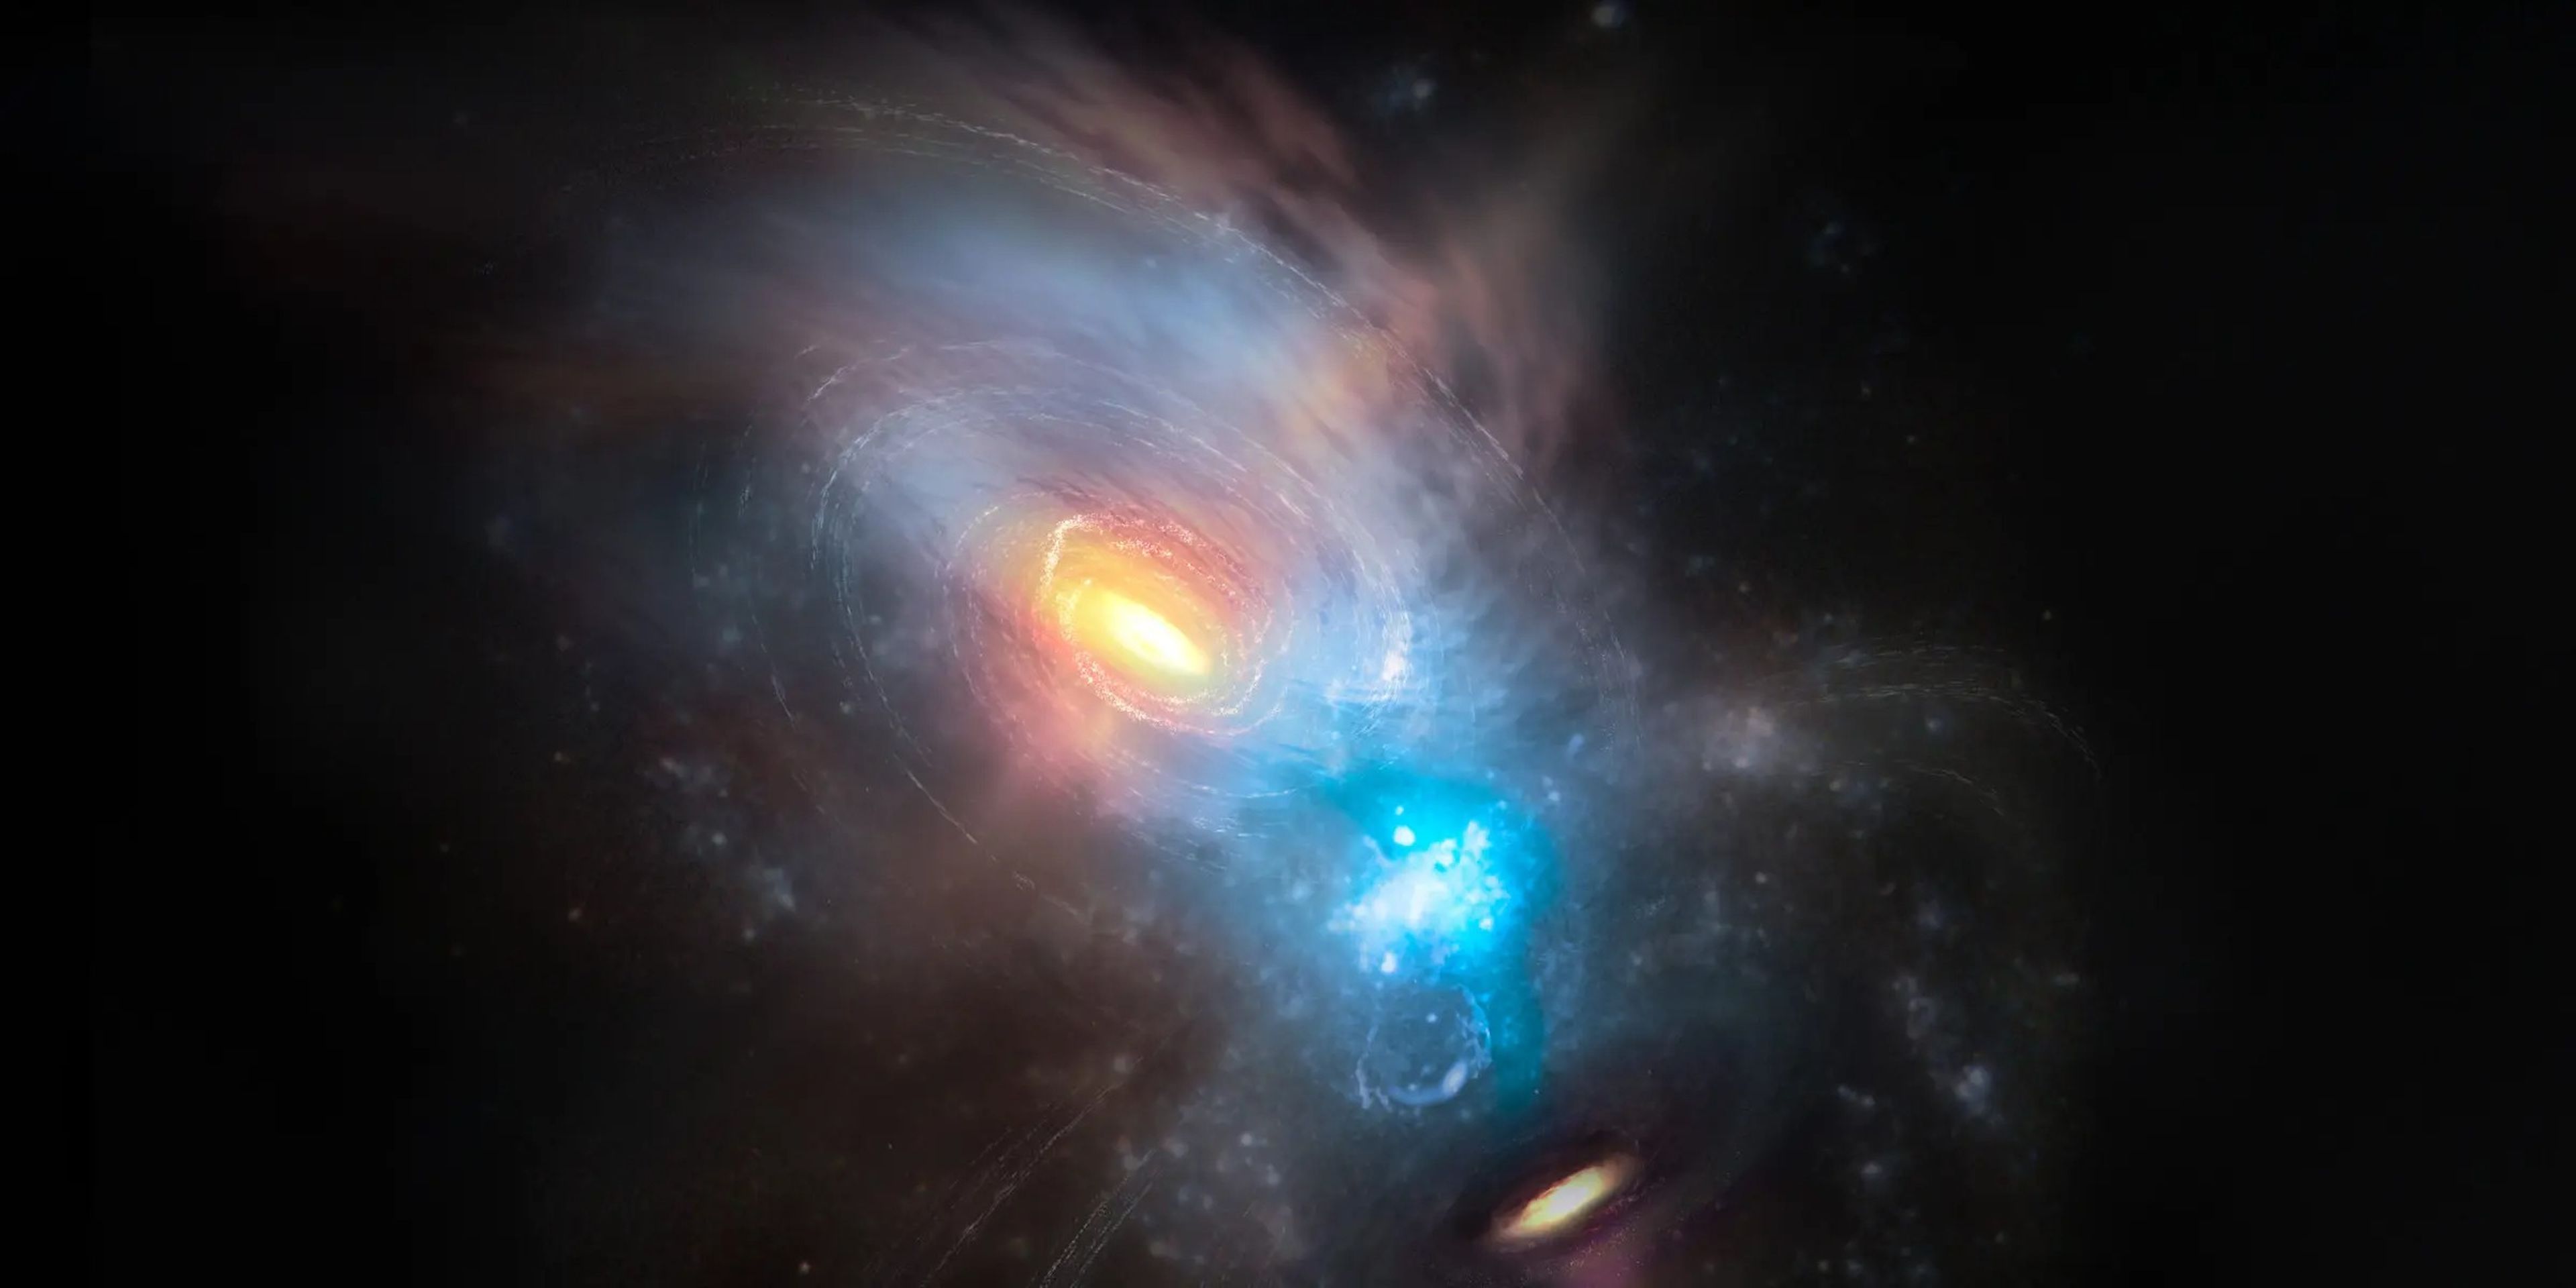 Los agujeros negros pueden quedar atrapados en las espirales gravitatorias de otro, y así colisionar o retroceder.